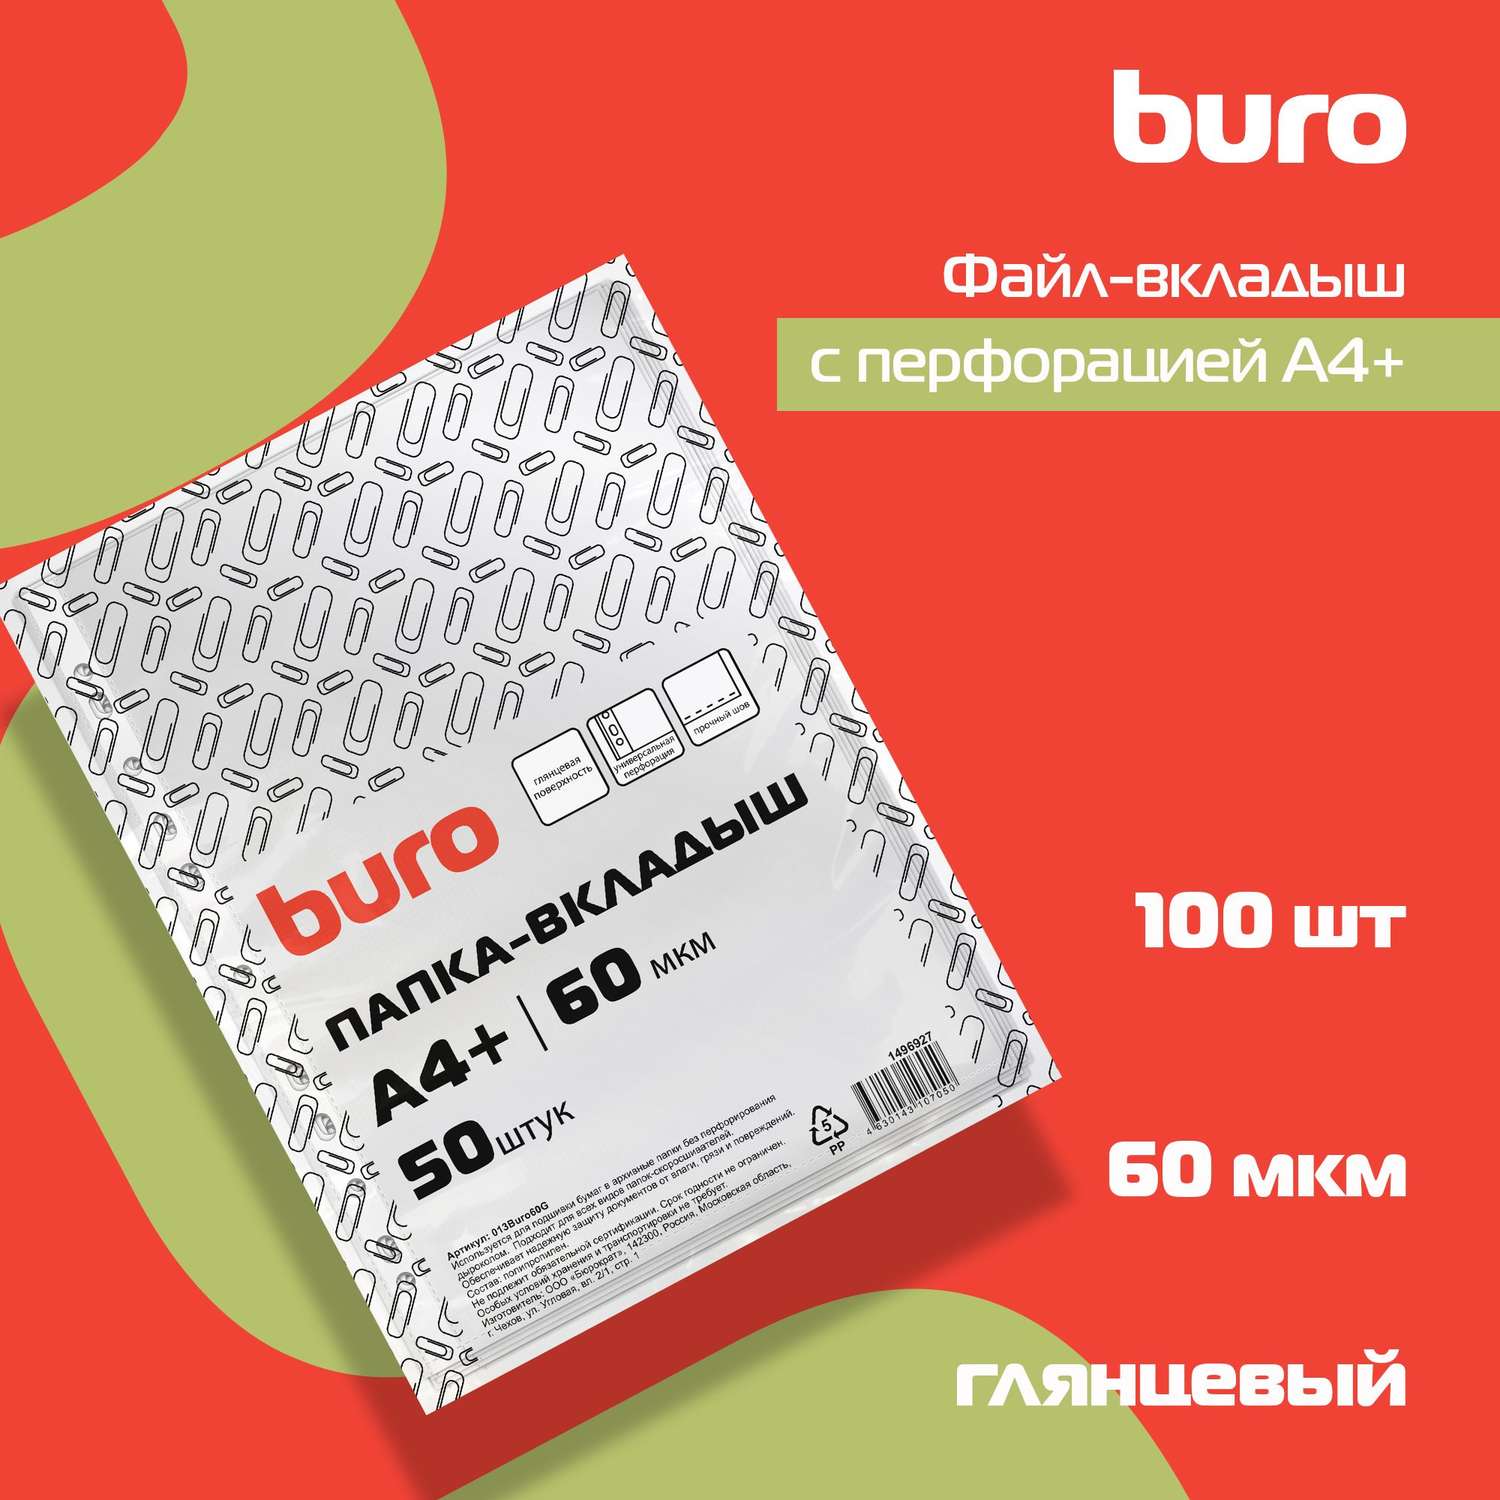 Файлы-вкладыши Buro глянцевые А4+ 60мкм упаковка 50 шт - фото 6